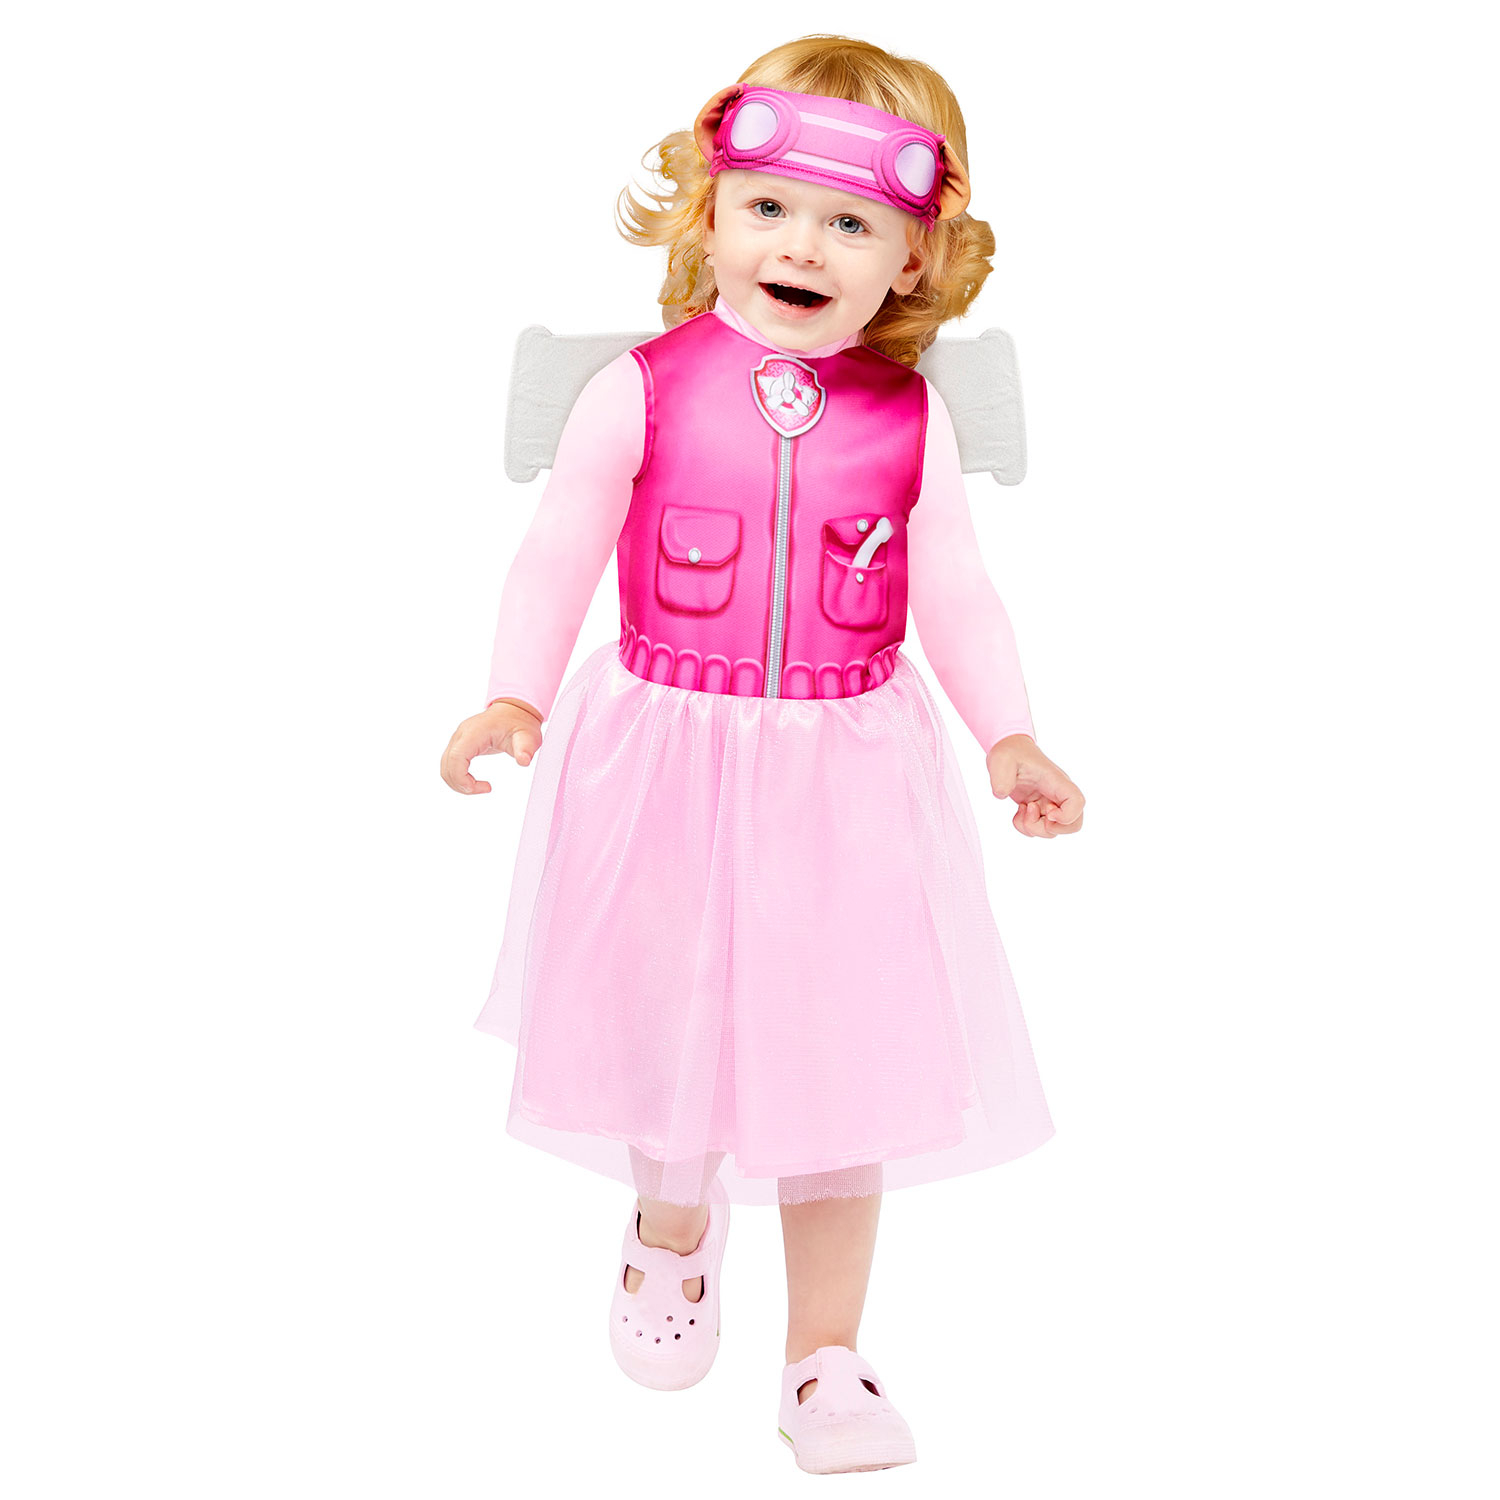 E-shop Amscan Detský kostým pre najmenších - Paw Patrol Skye Veľkosť najmenší: 18 - 24 mesiacov